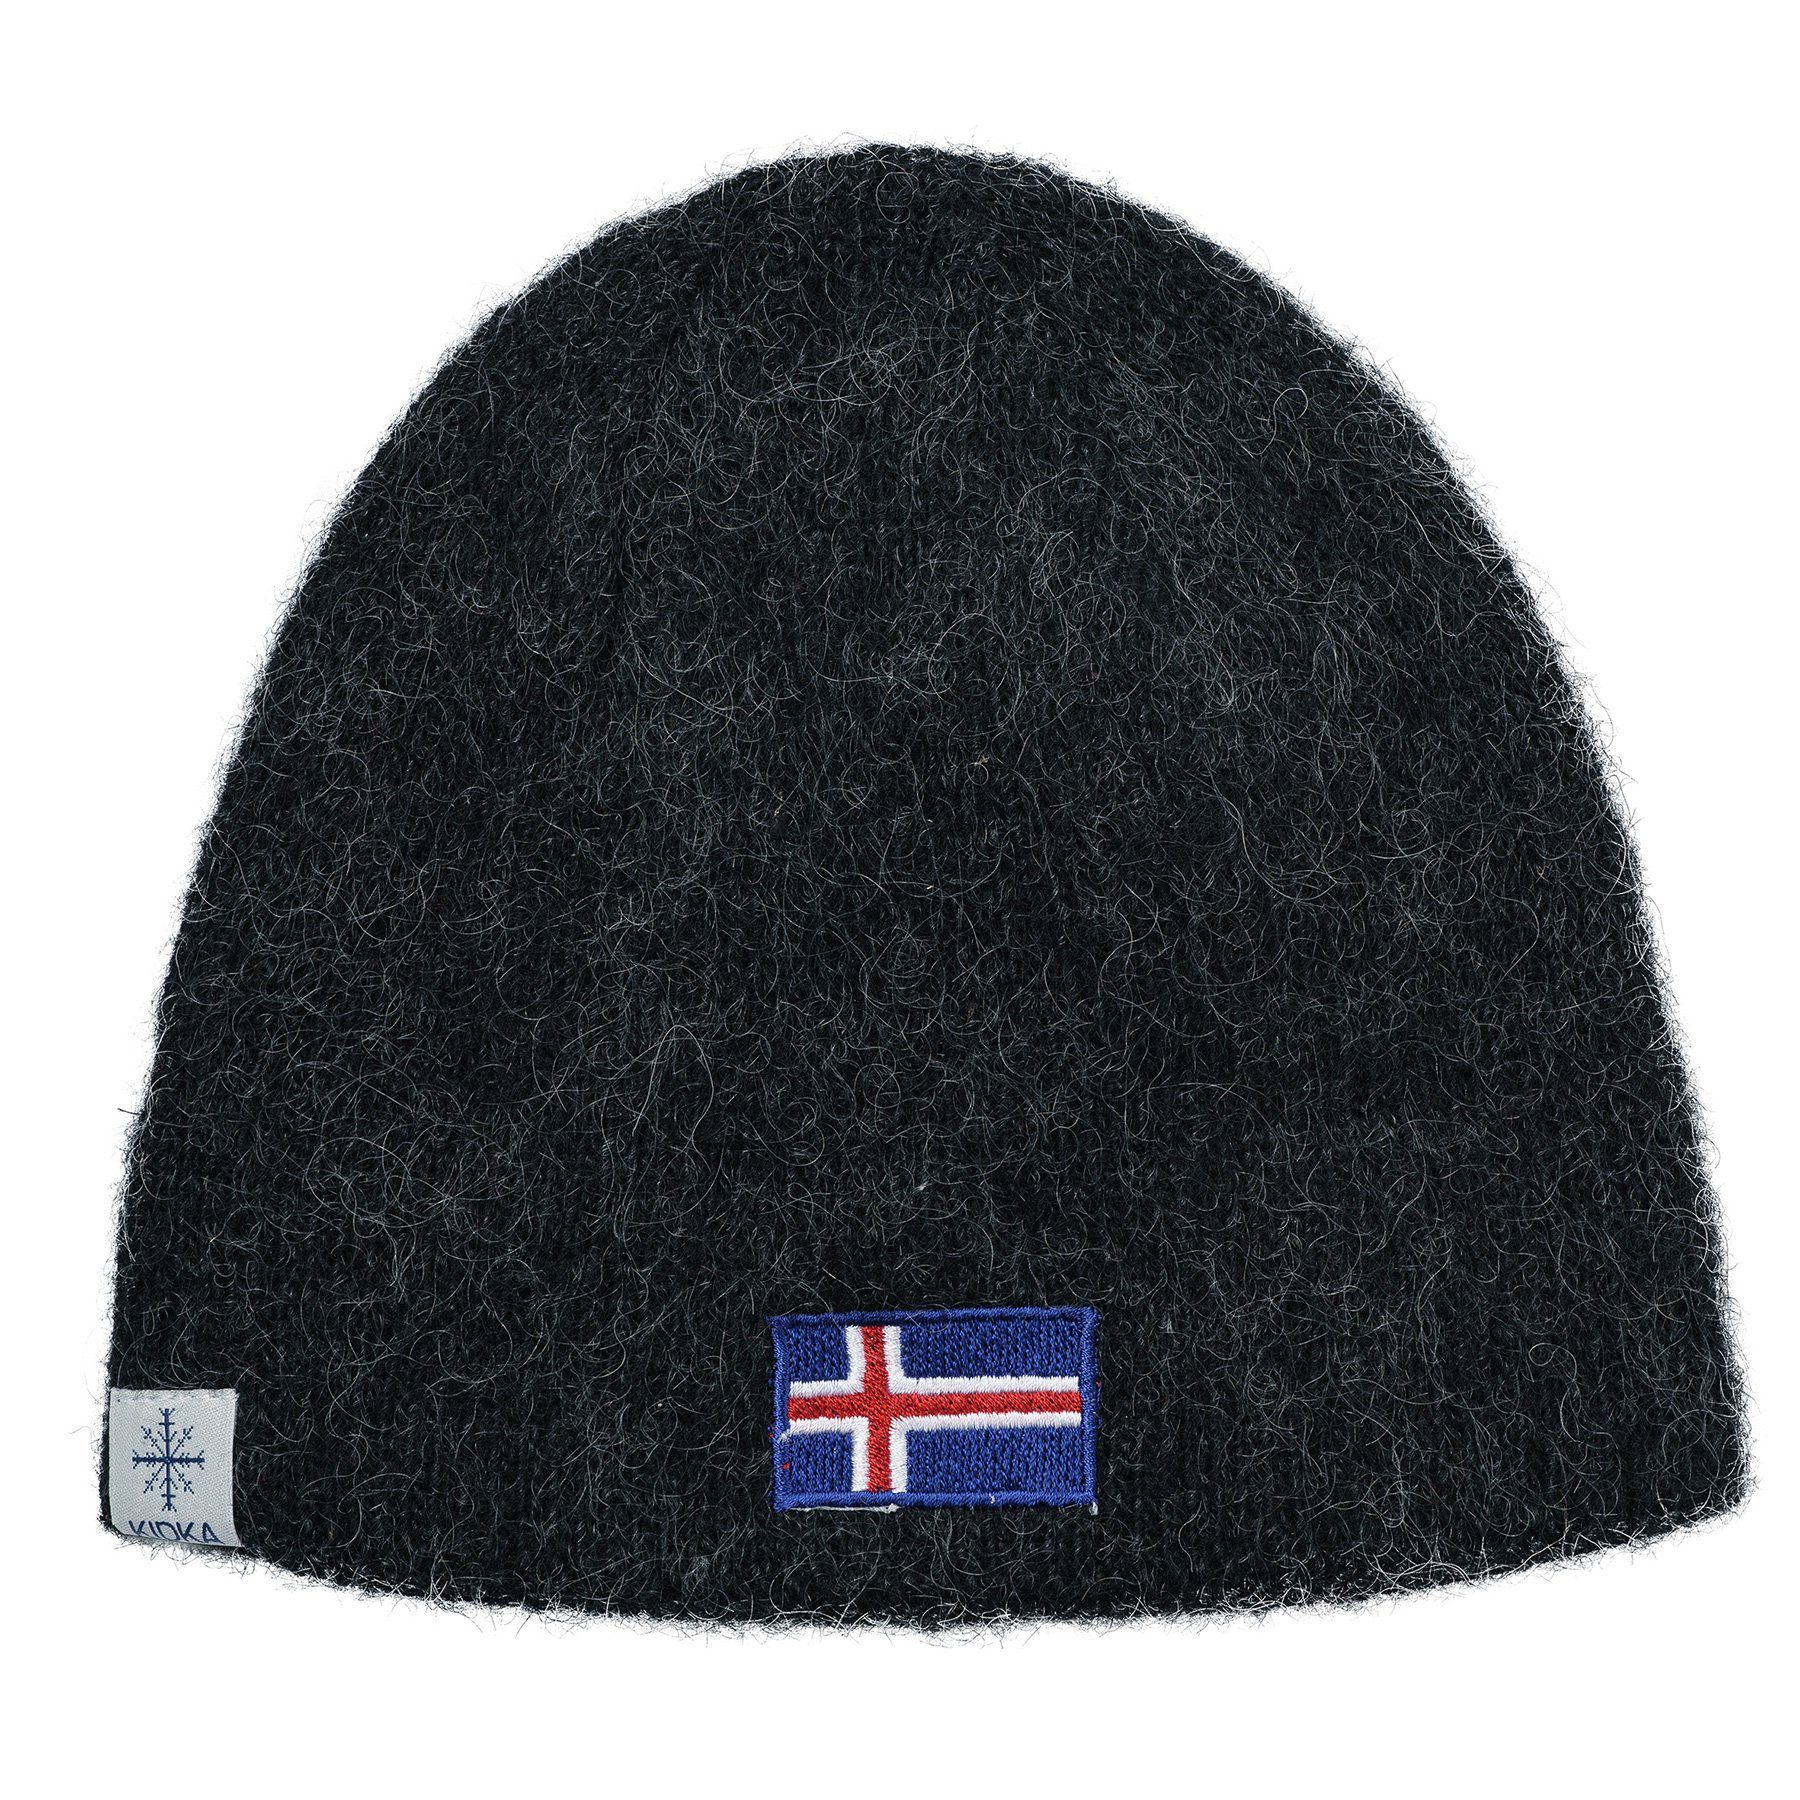 KIDKA Strickmütze Wollmütze mit Island Flagge Aufnäher - aus isländischer Schurwolle (rau)